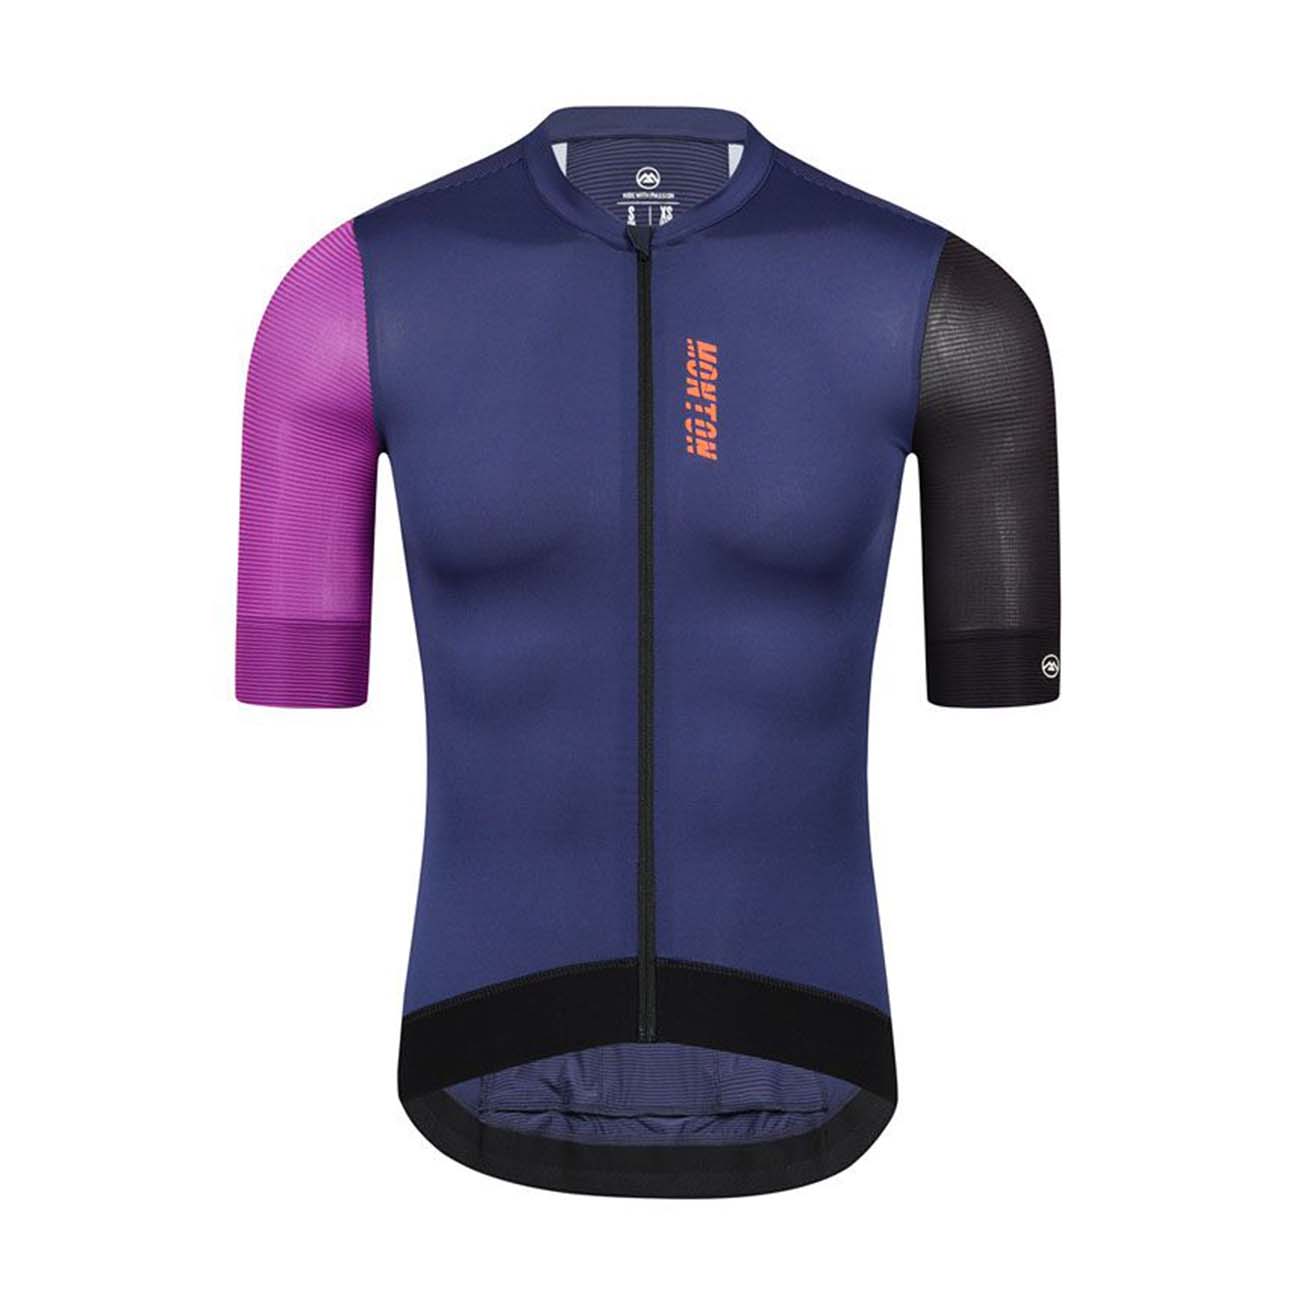 MONTON Cyklistický dres s krátkým rukávem - TRAVELER EVO - fialová/modrá/černá S